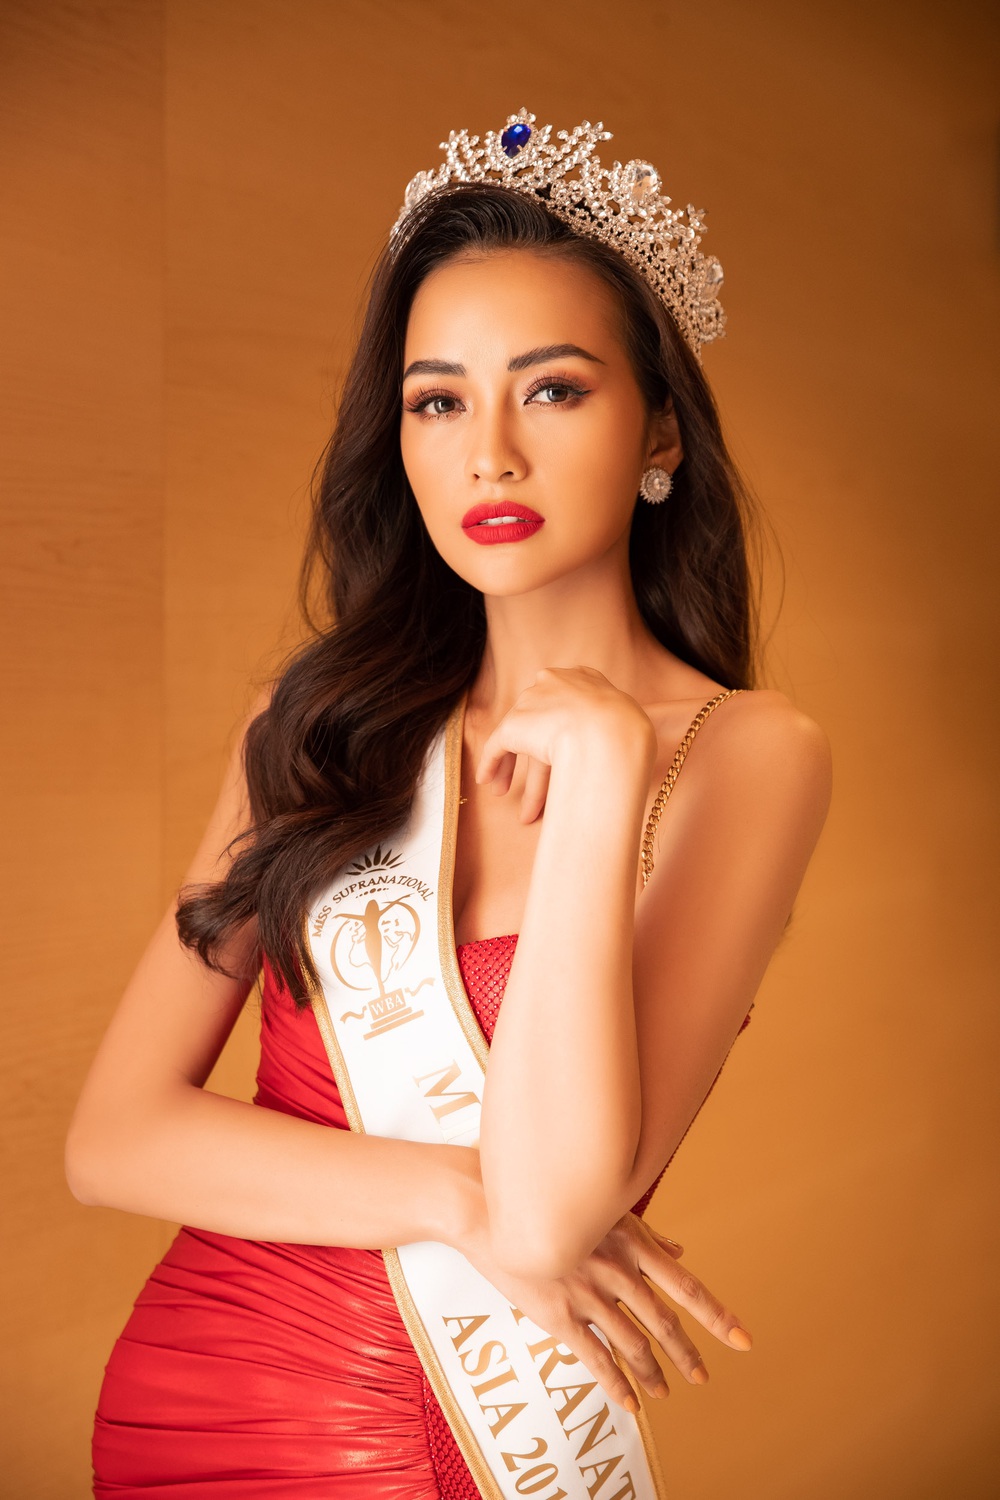 Hoa hậu Siêu quốc gia châu Á Ngọc Châu khoe chân dài, lưng trần gợi cảm - Ảnh 1.